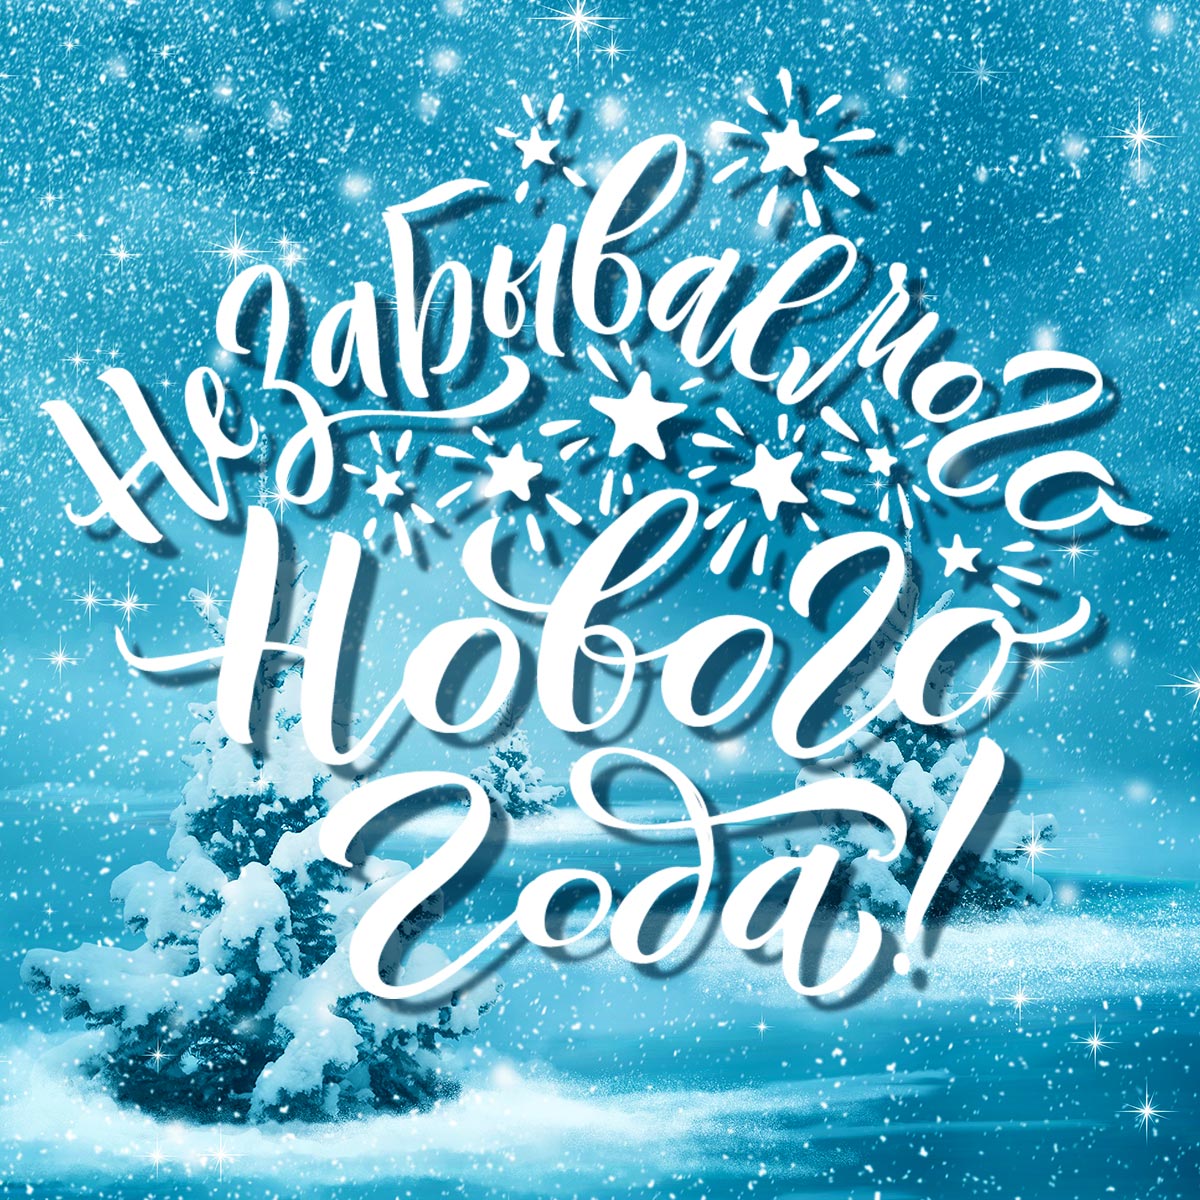 Зимняя открытка с новым годом с ёлками под снегопадом.